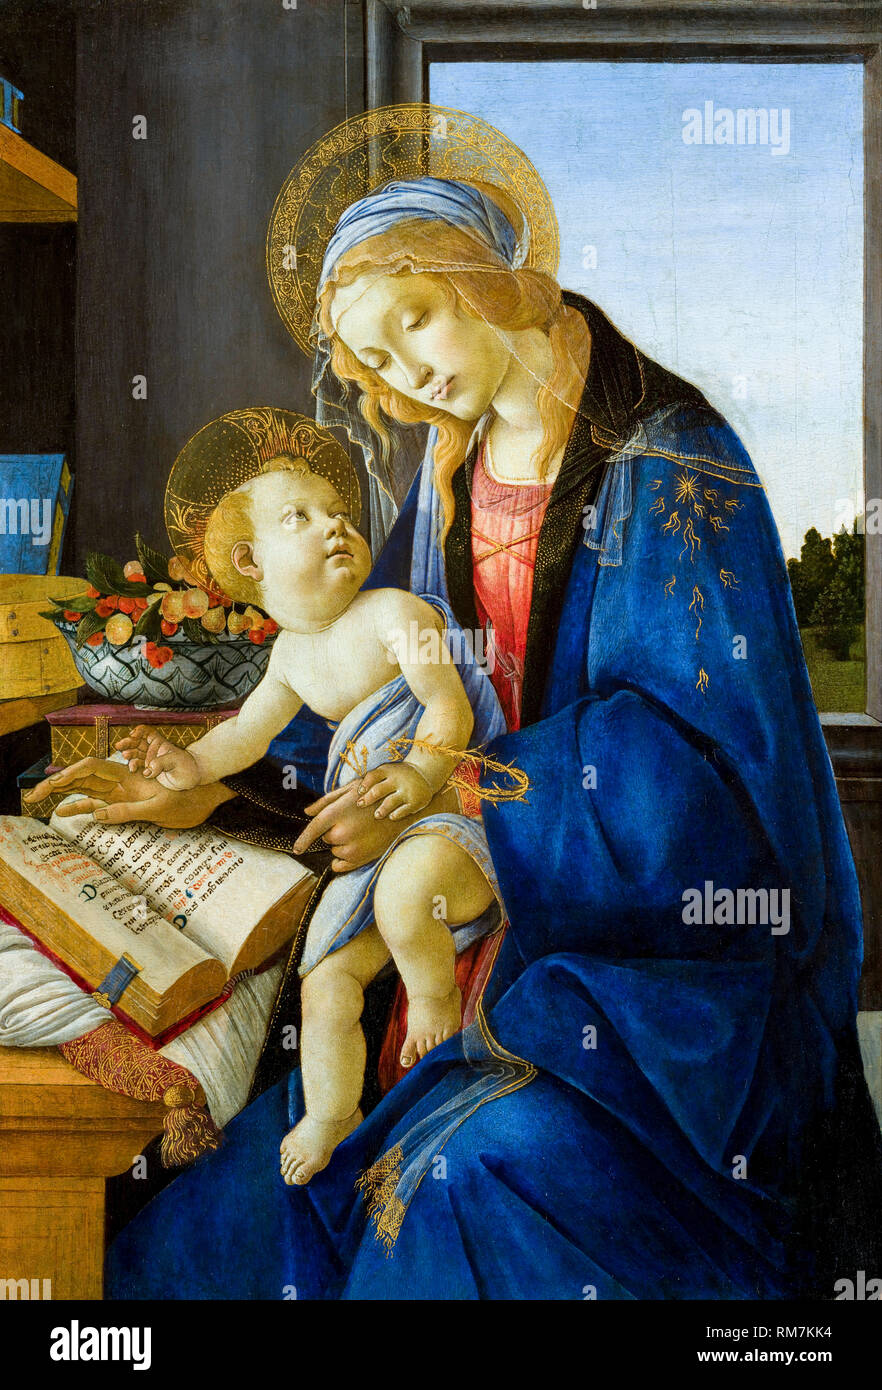 La Vierge à l'enfant (la Vierge du livre), peinture de Sandro Botticelli, 1480 Banque D'Images